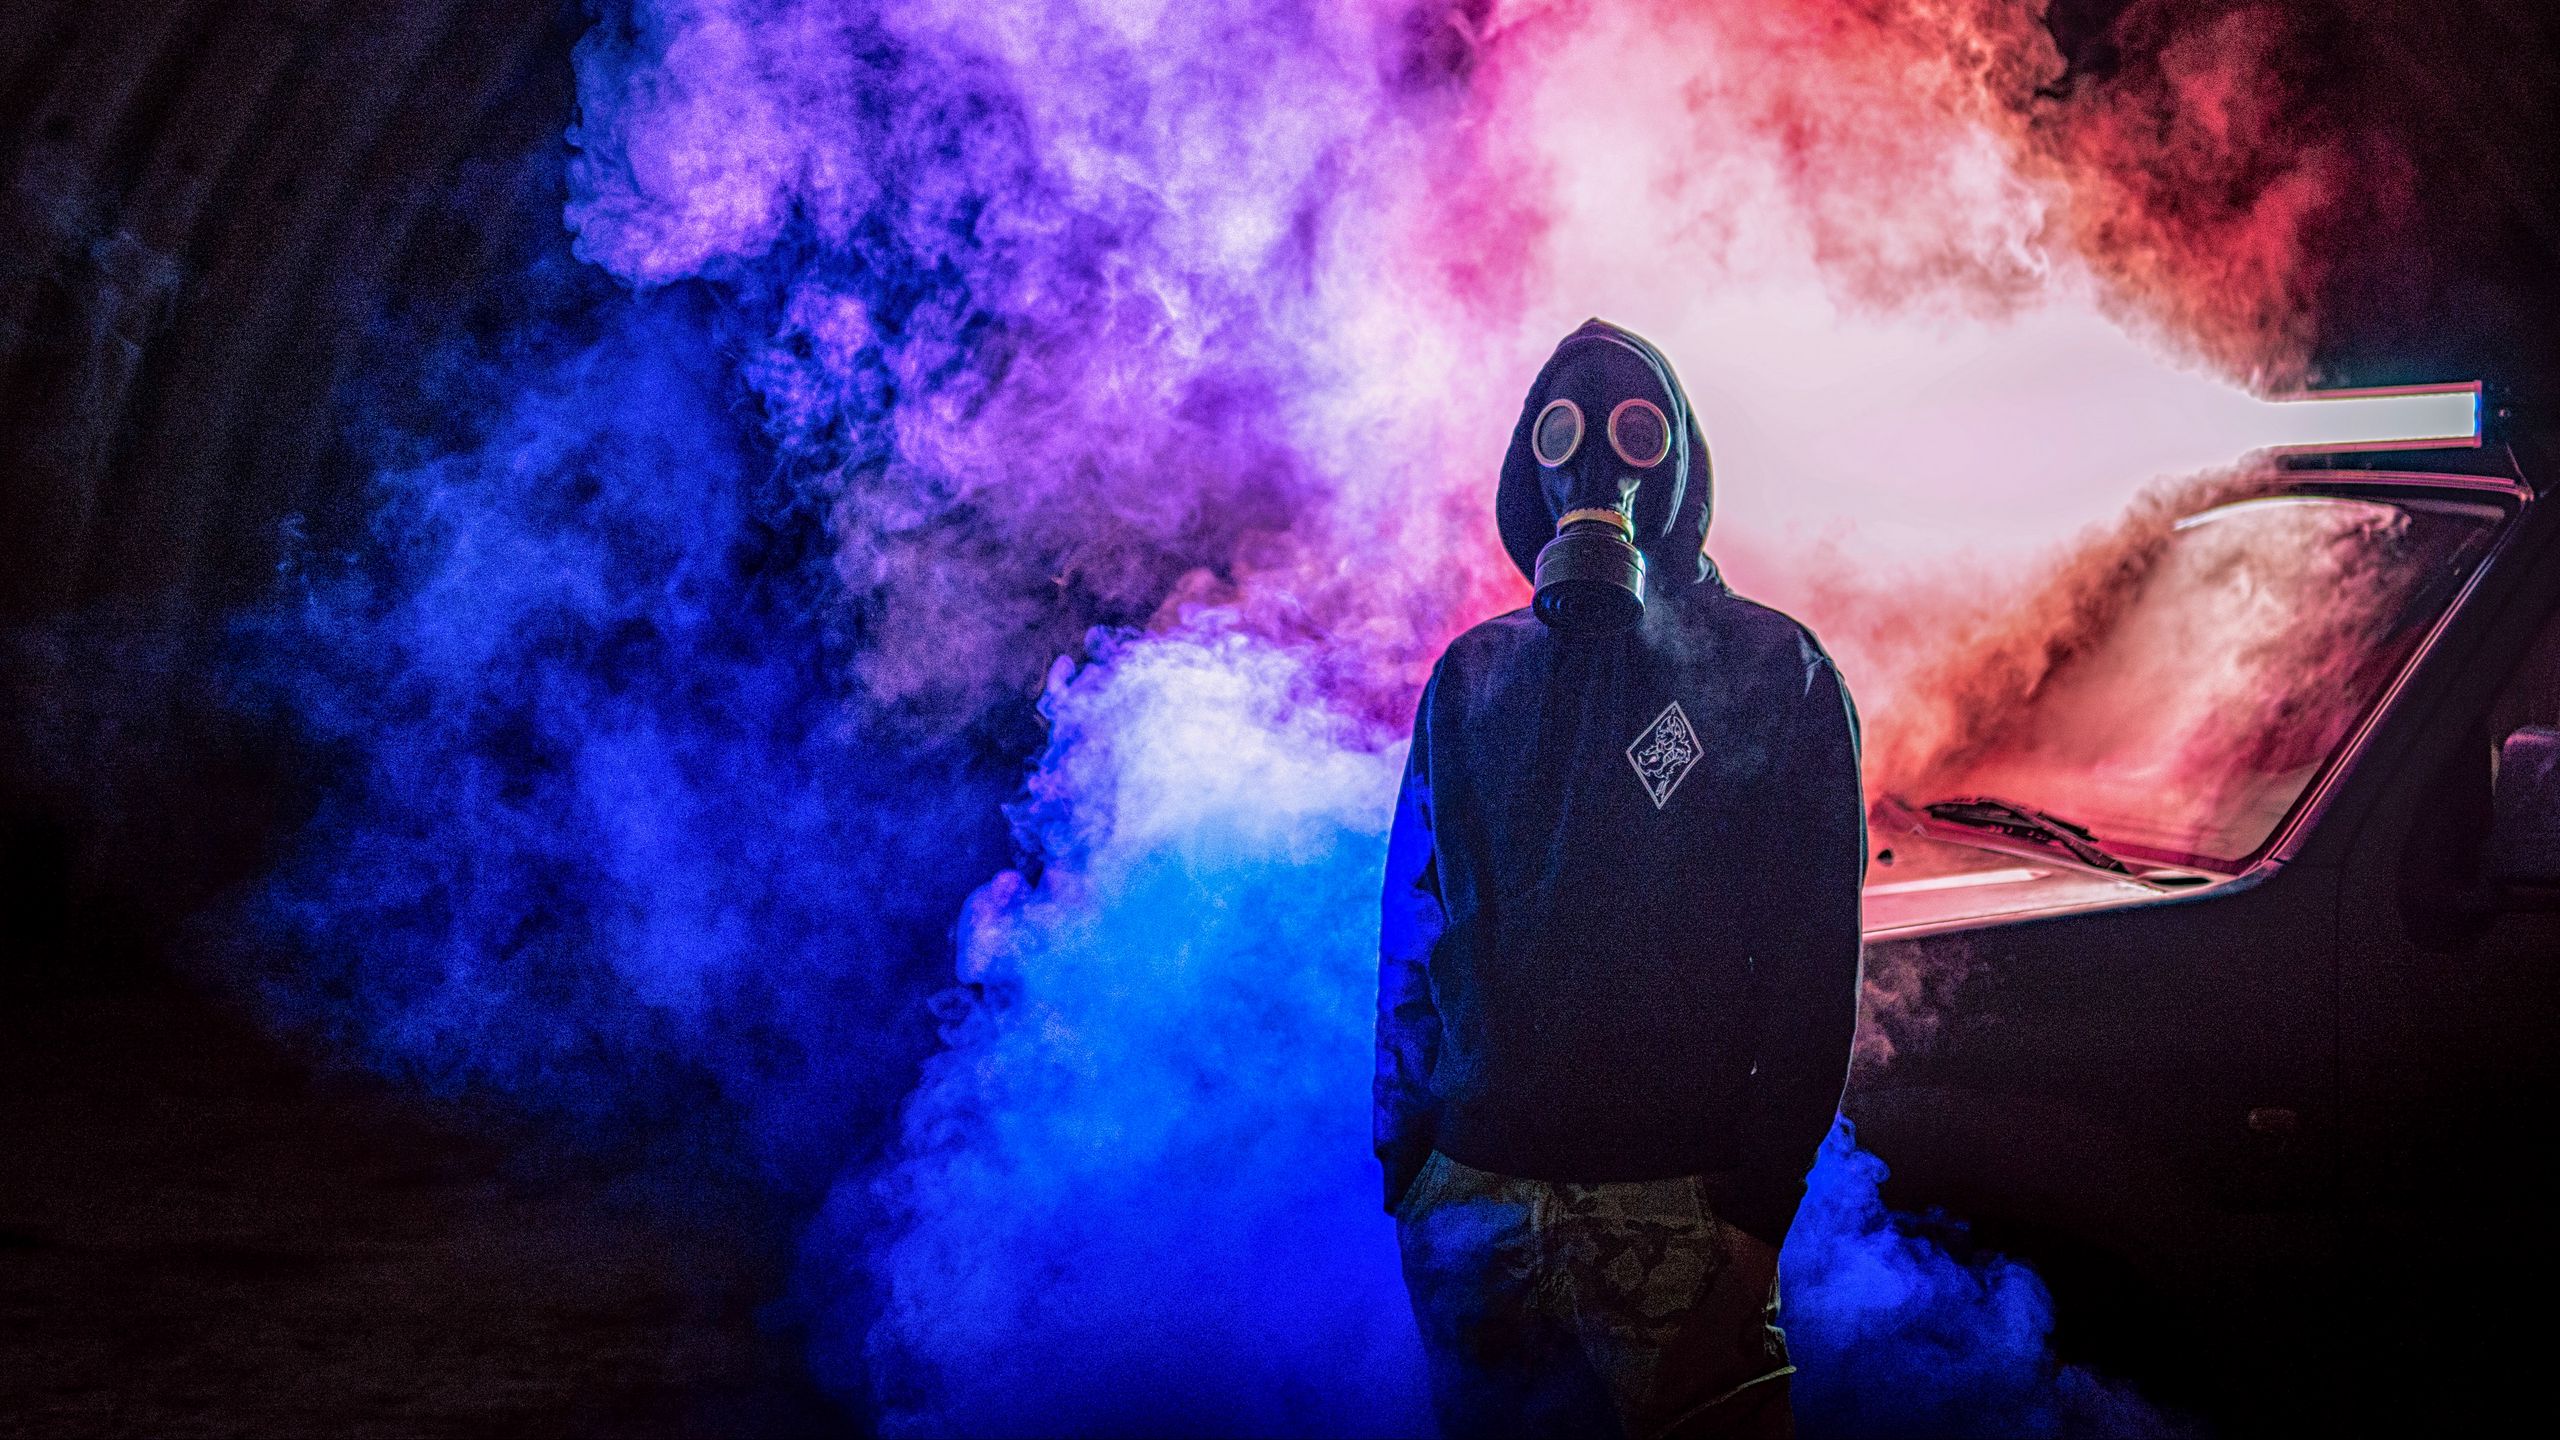 2560x1440 Wallpaper gas mask, man, smoke, colorful